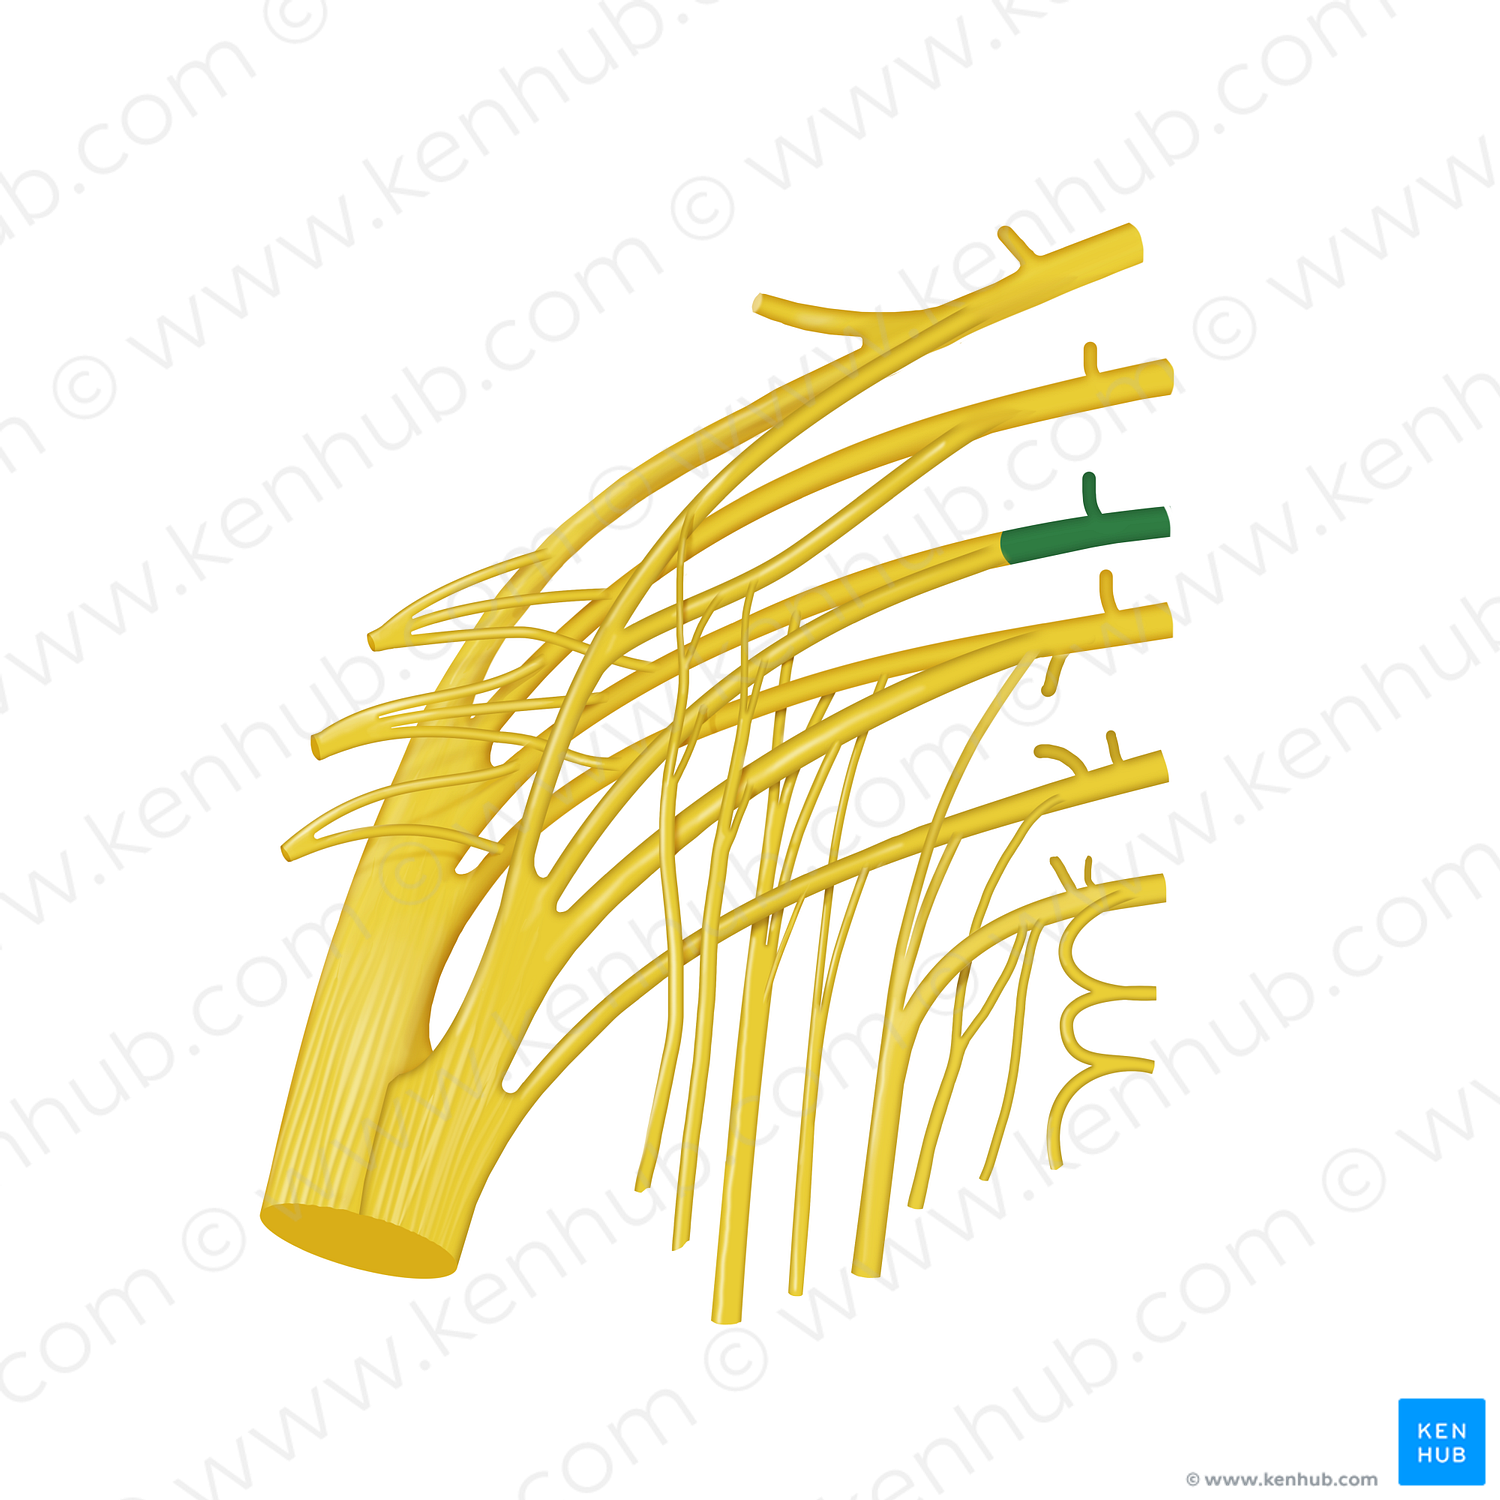 Spinal nerve S1 (#12782)